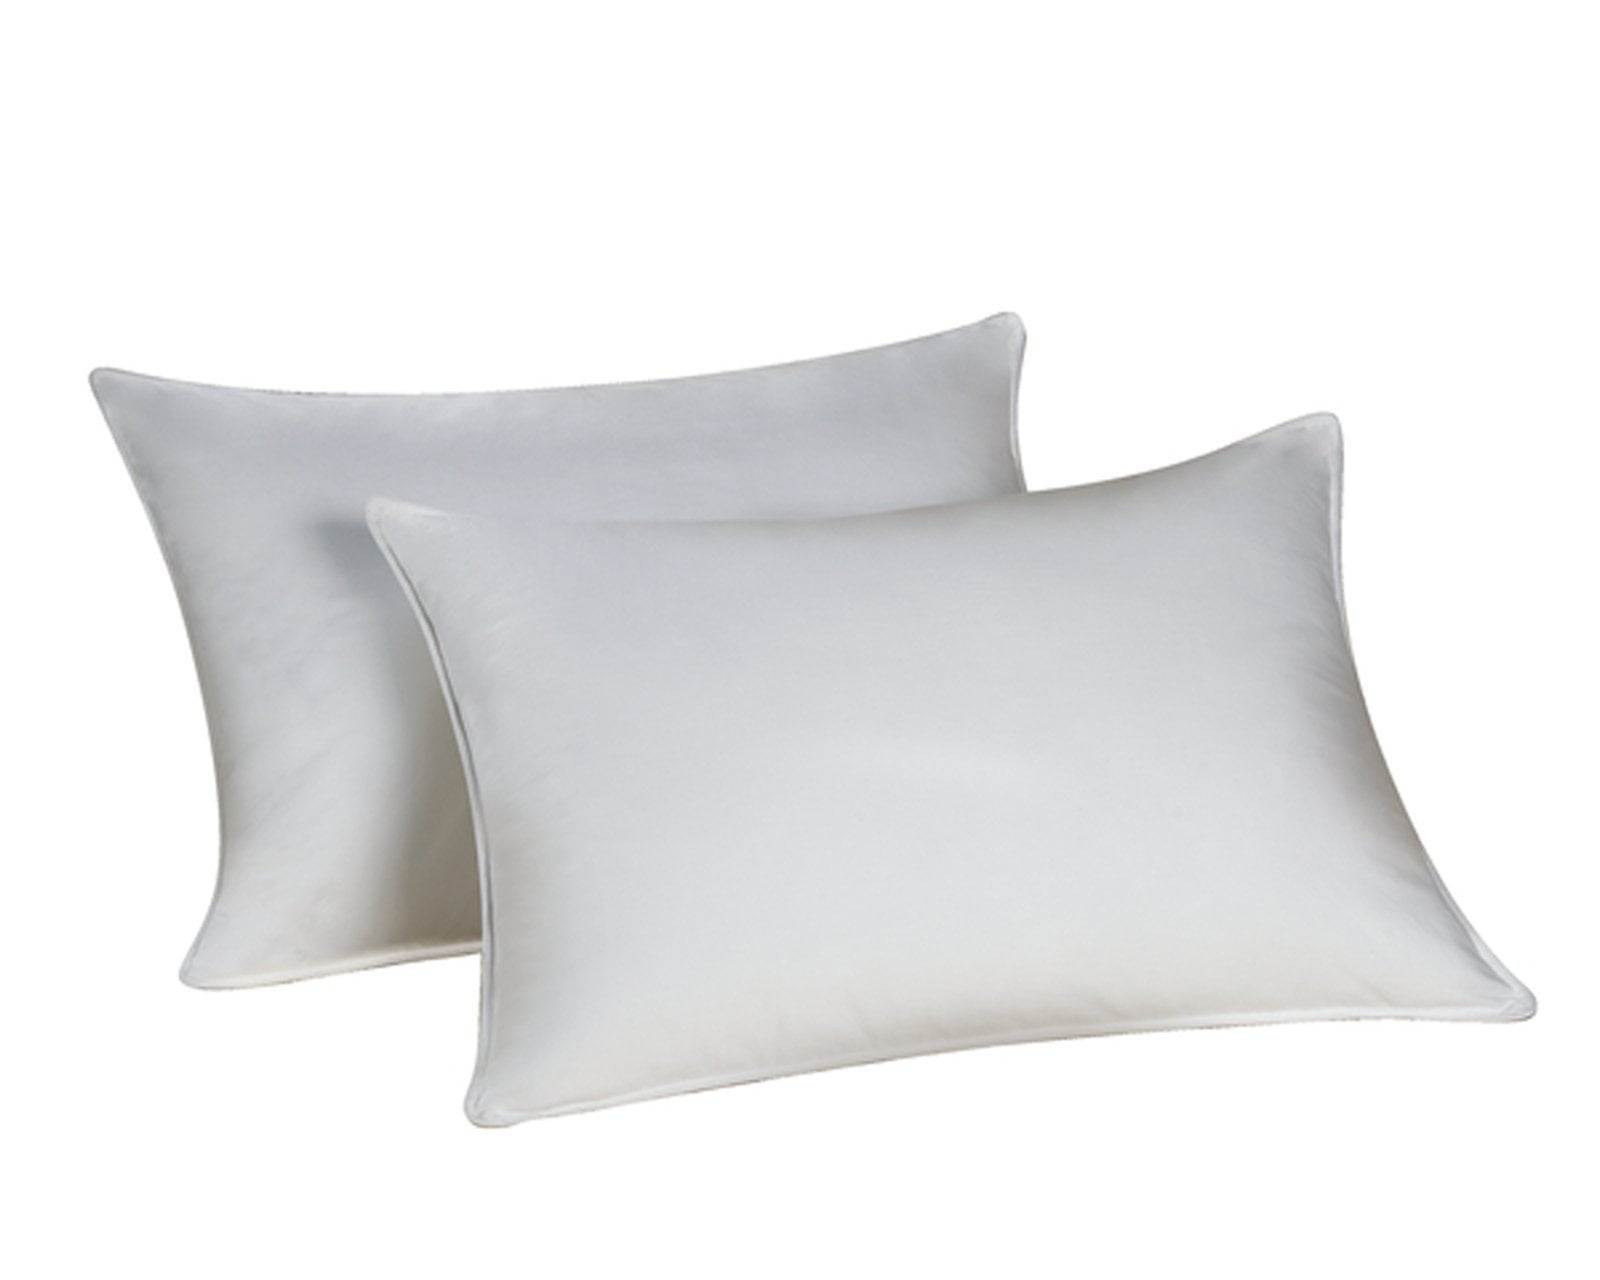 Envirosleep Dream Surrender King Pillow Set. 2 Pillows Found @ Marriott Hotels 